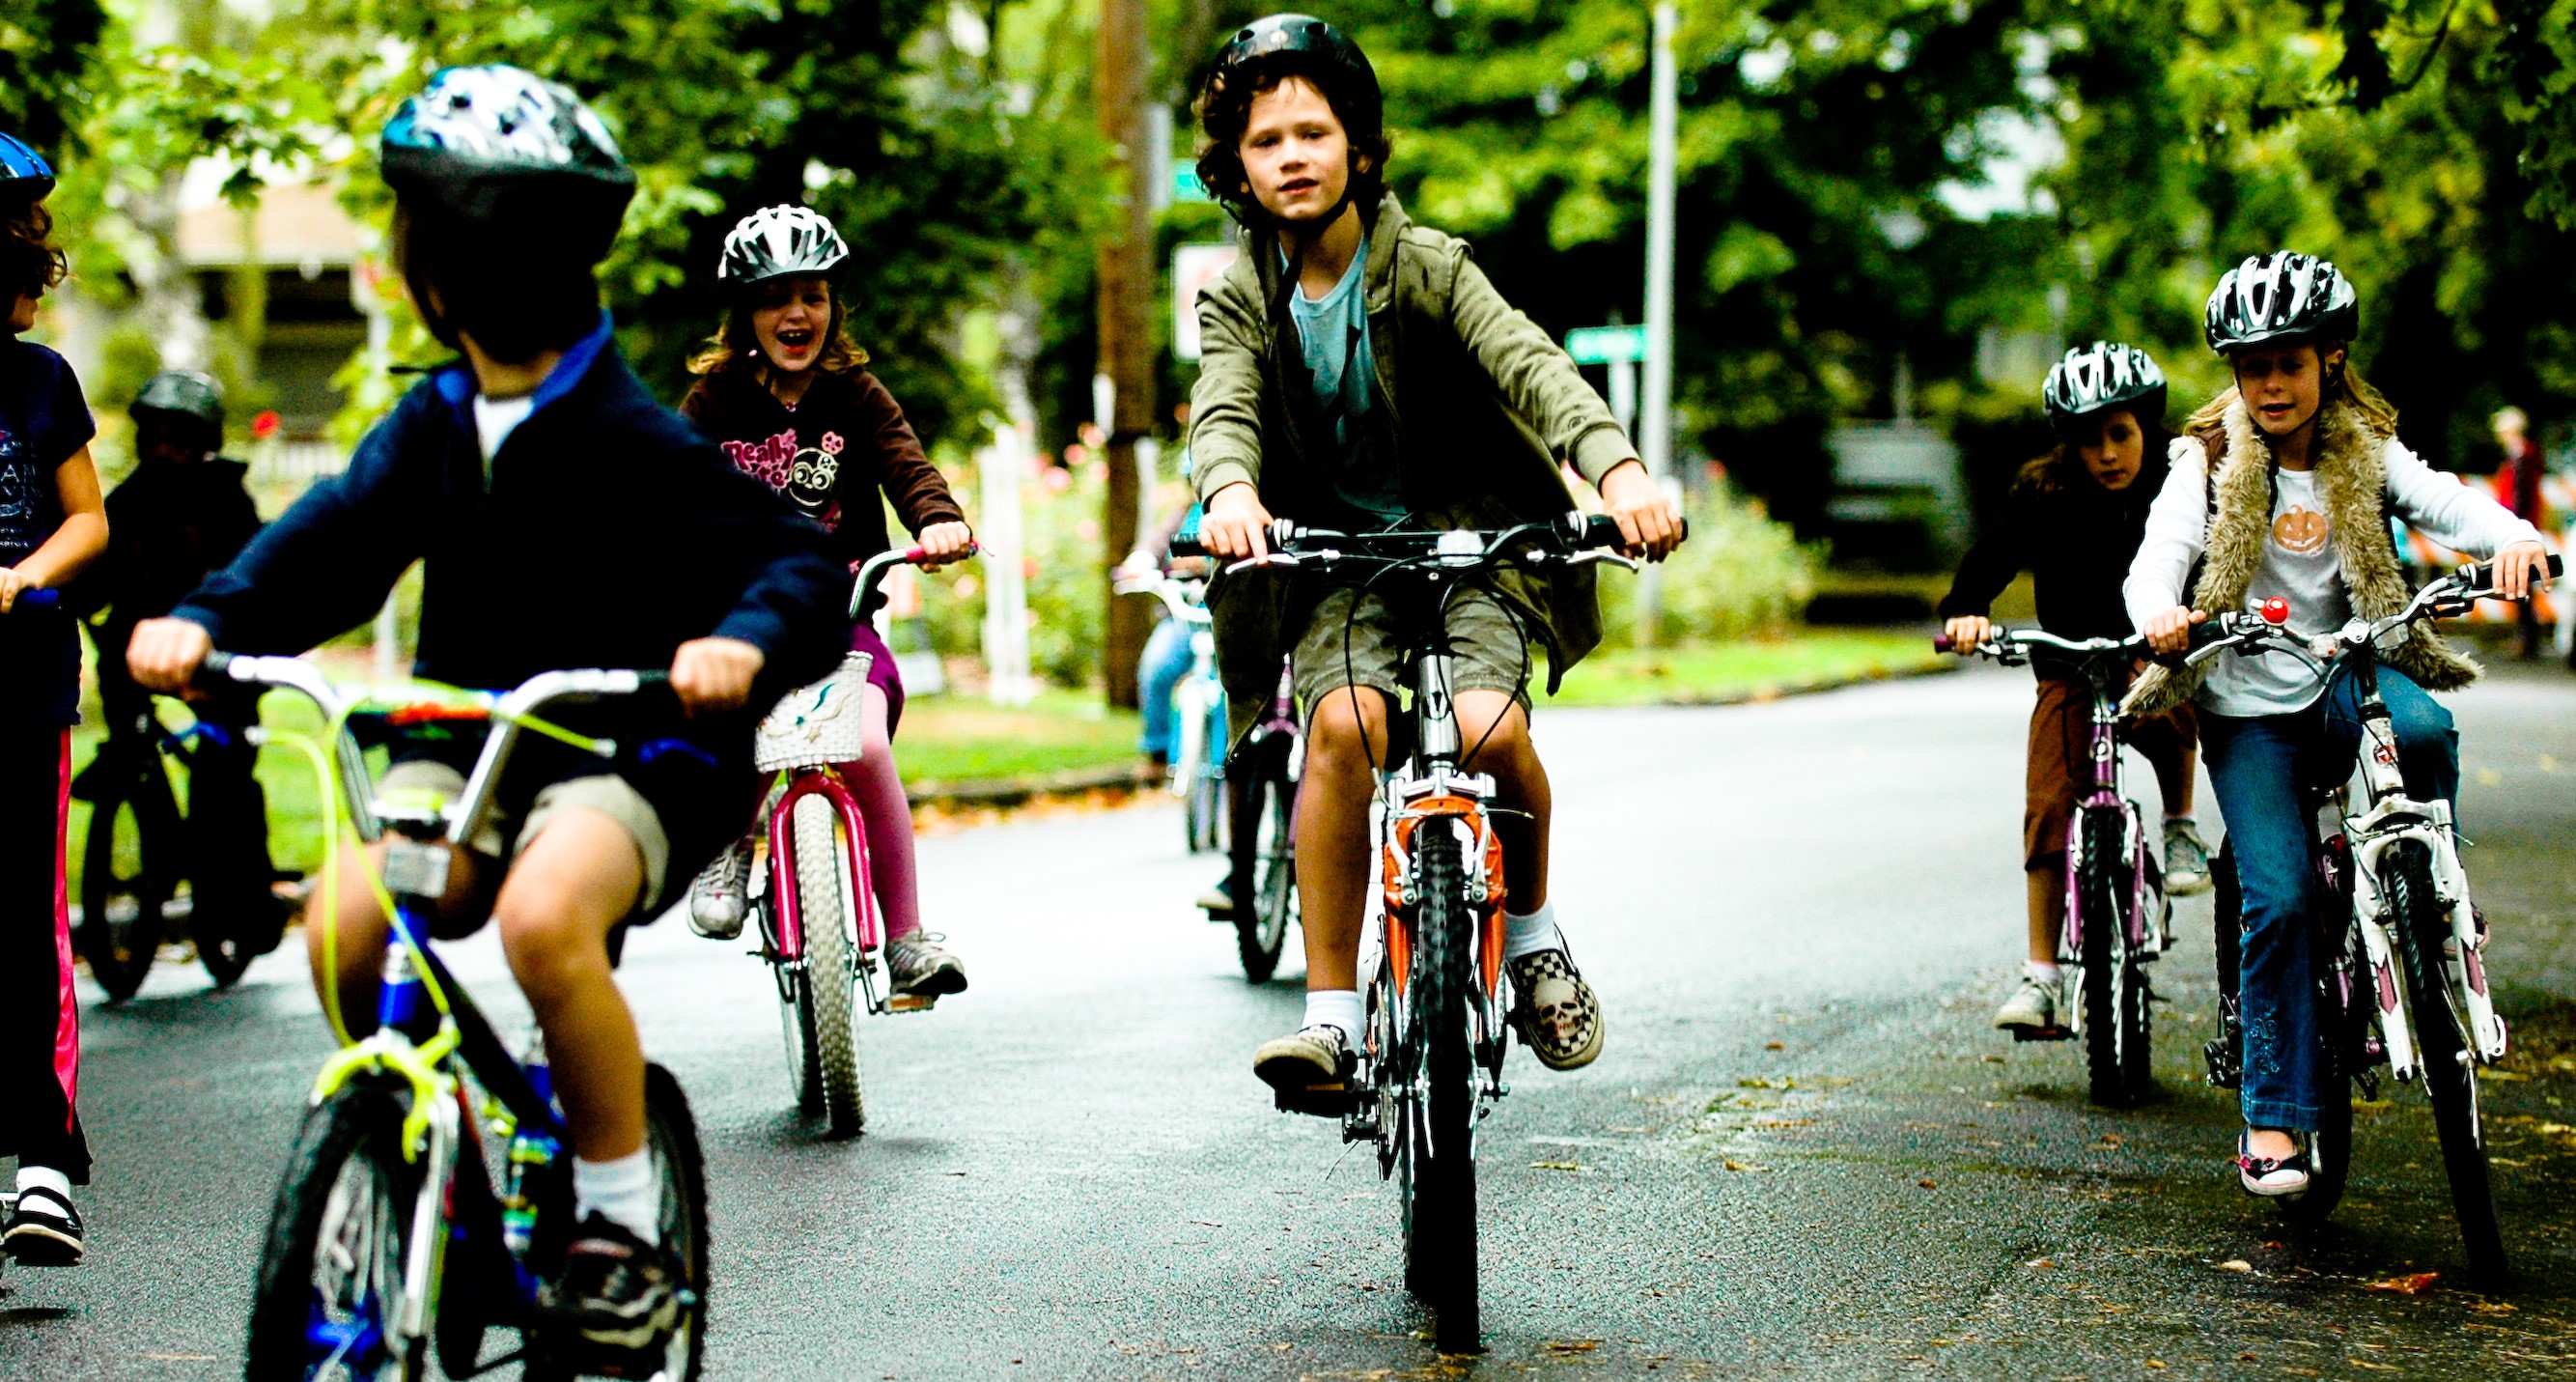 Children riding bikes